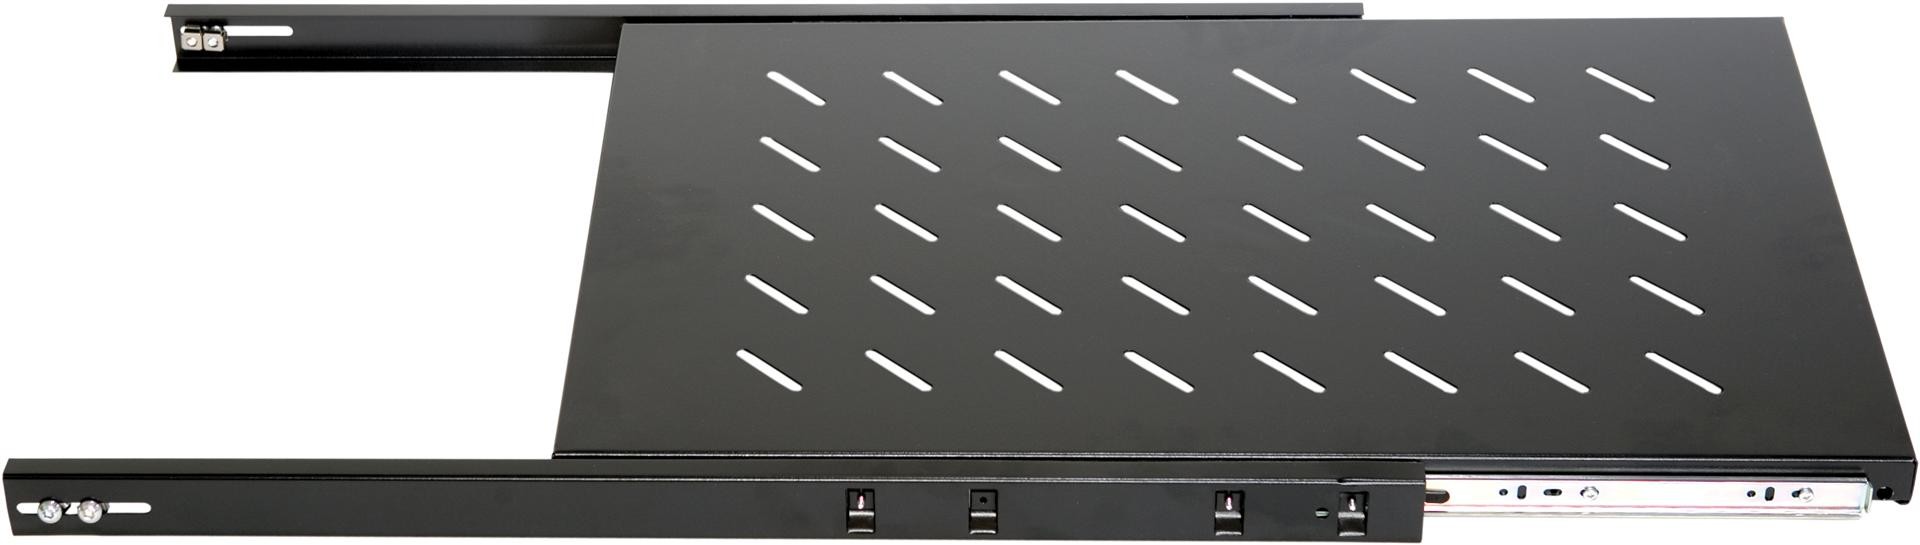 Ausziehbares Board für Serverschränke mit 1200mm Tiefe - Bild 1